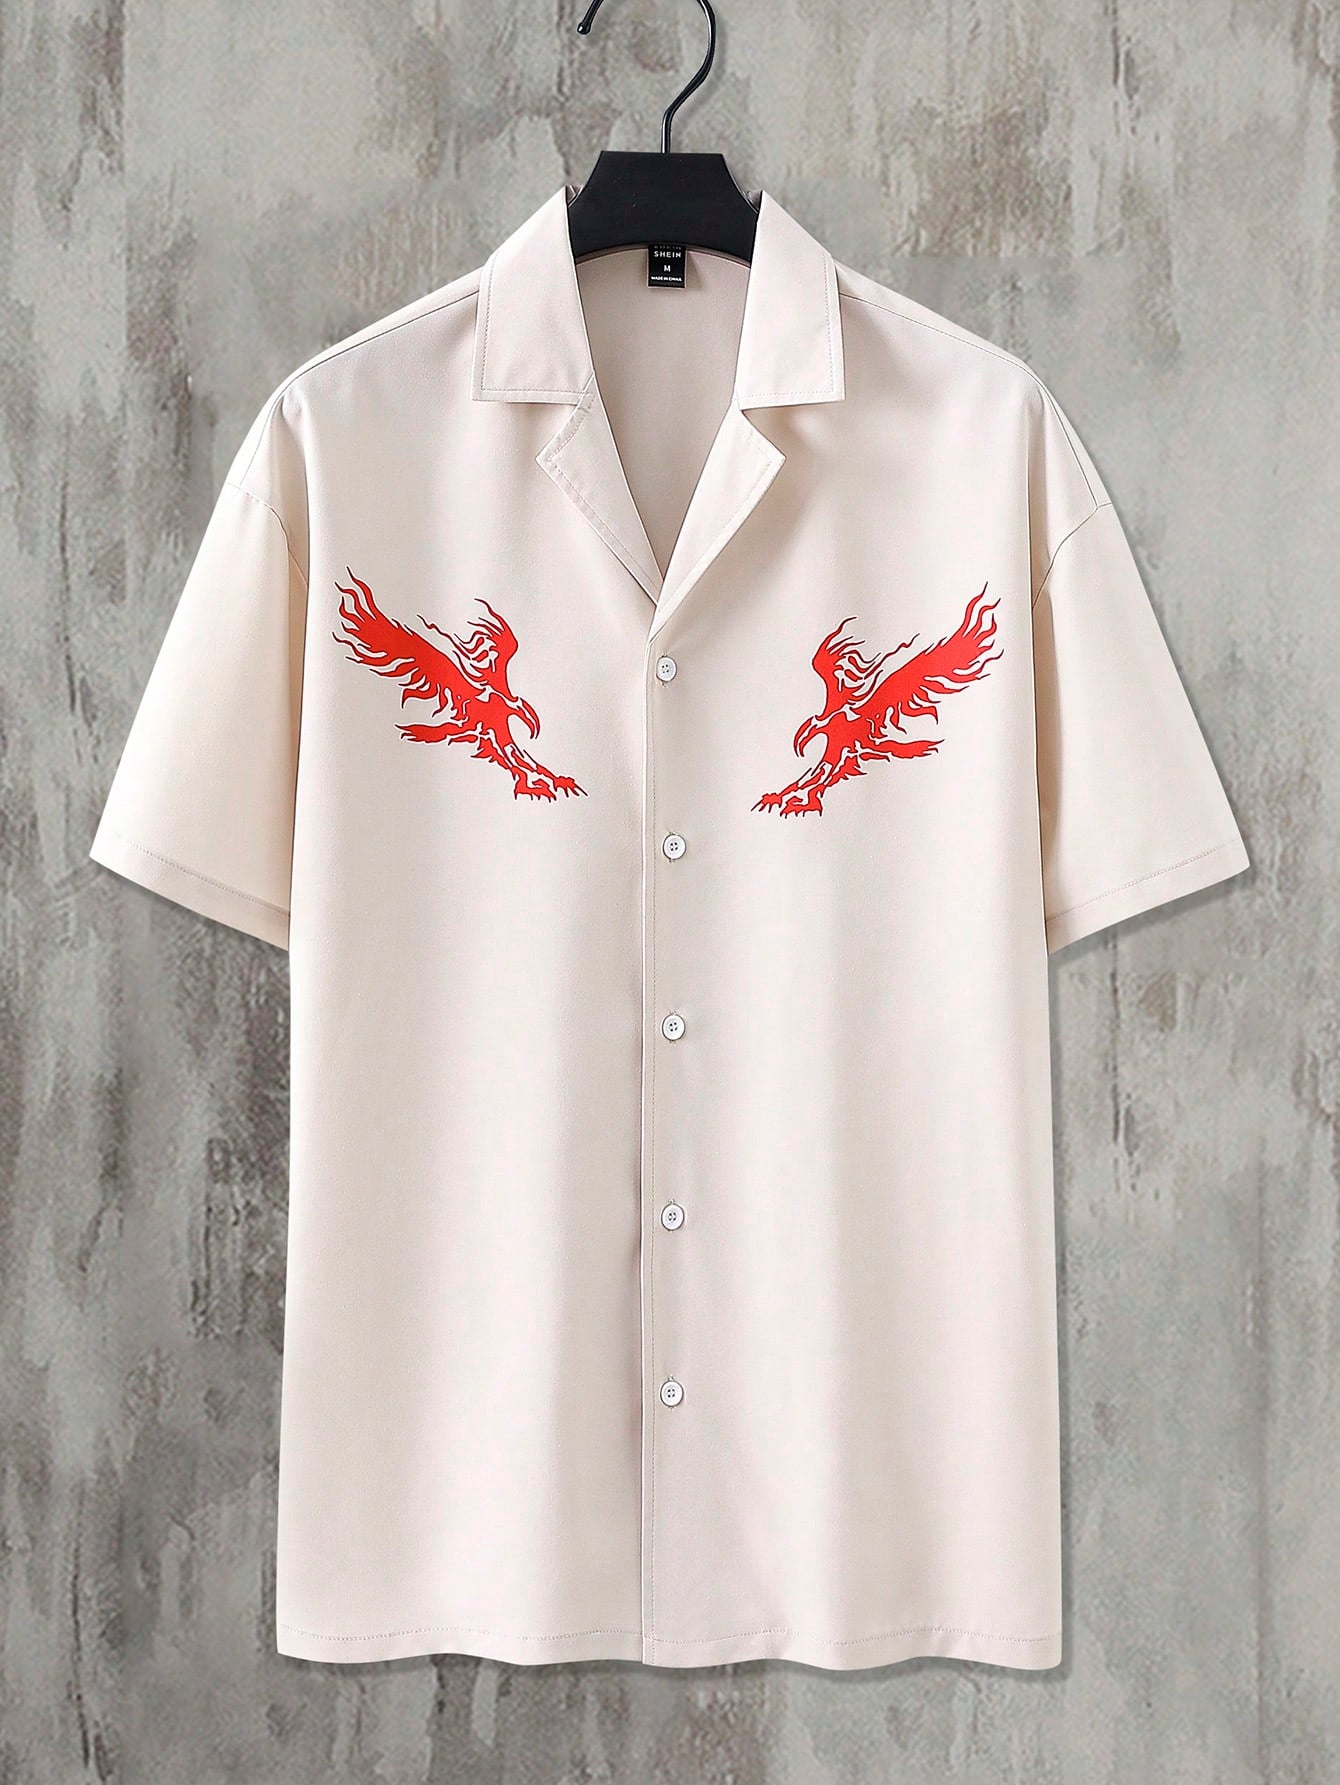 Men's Short Sleeve Button-Down Shirt With Bird Print